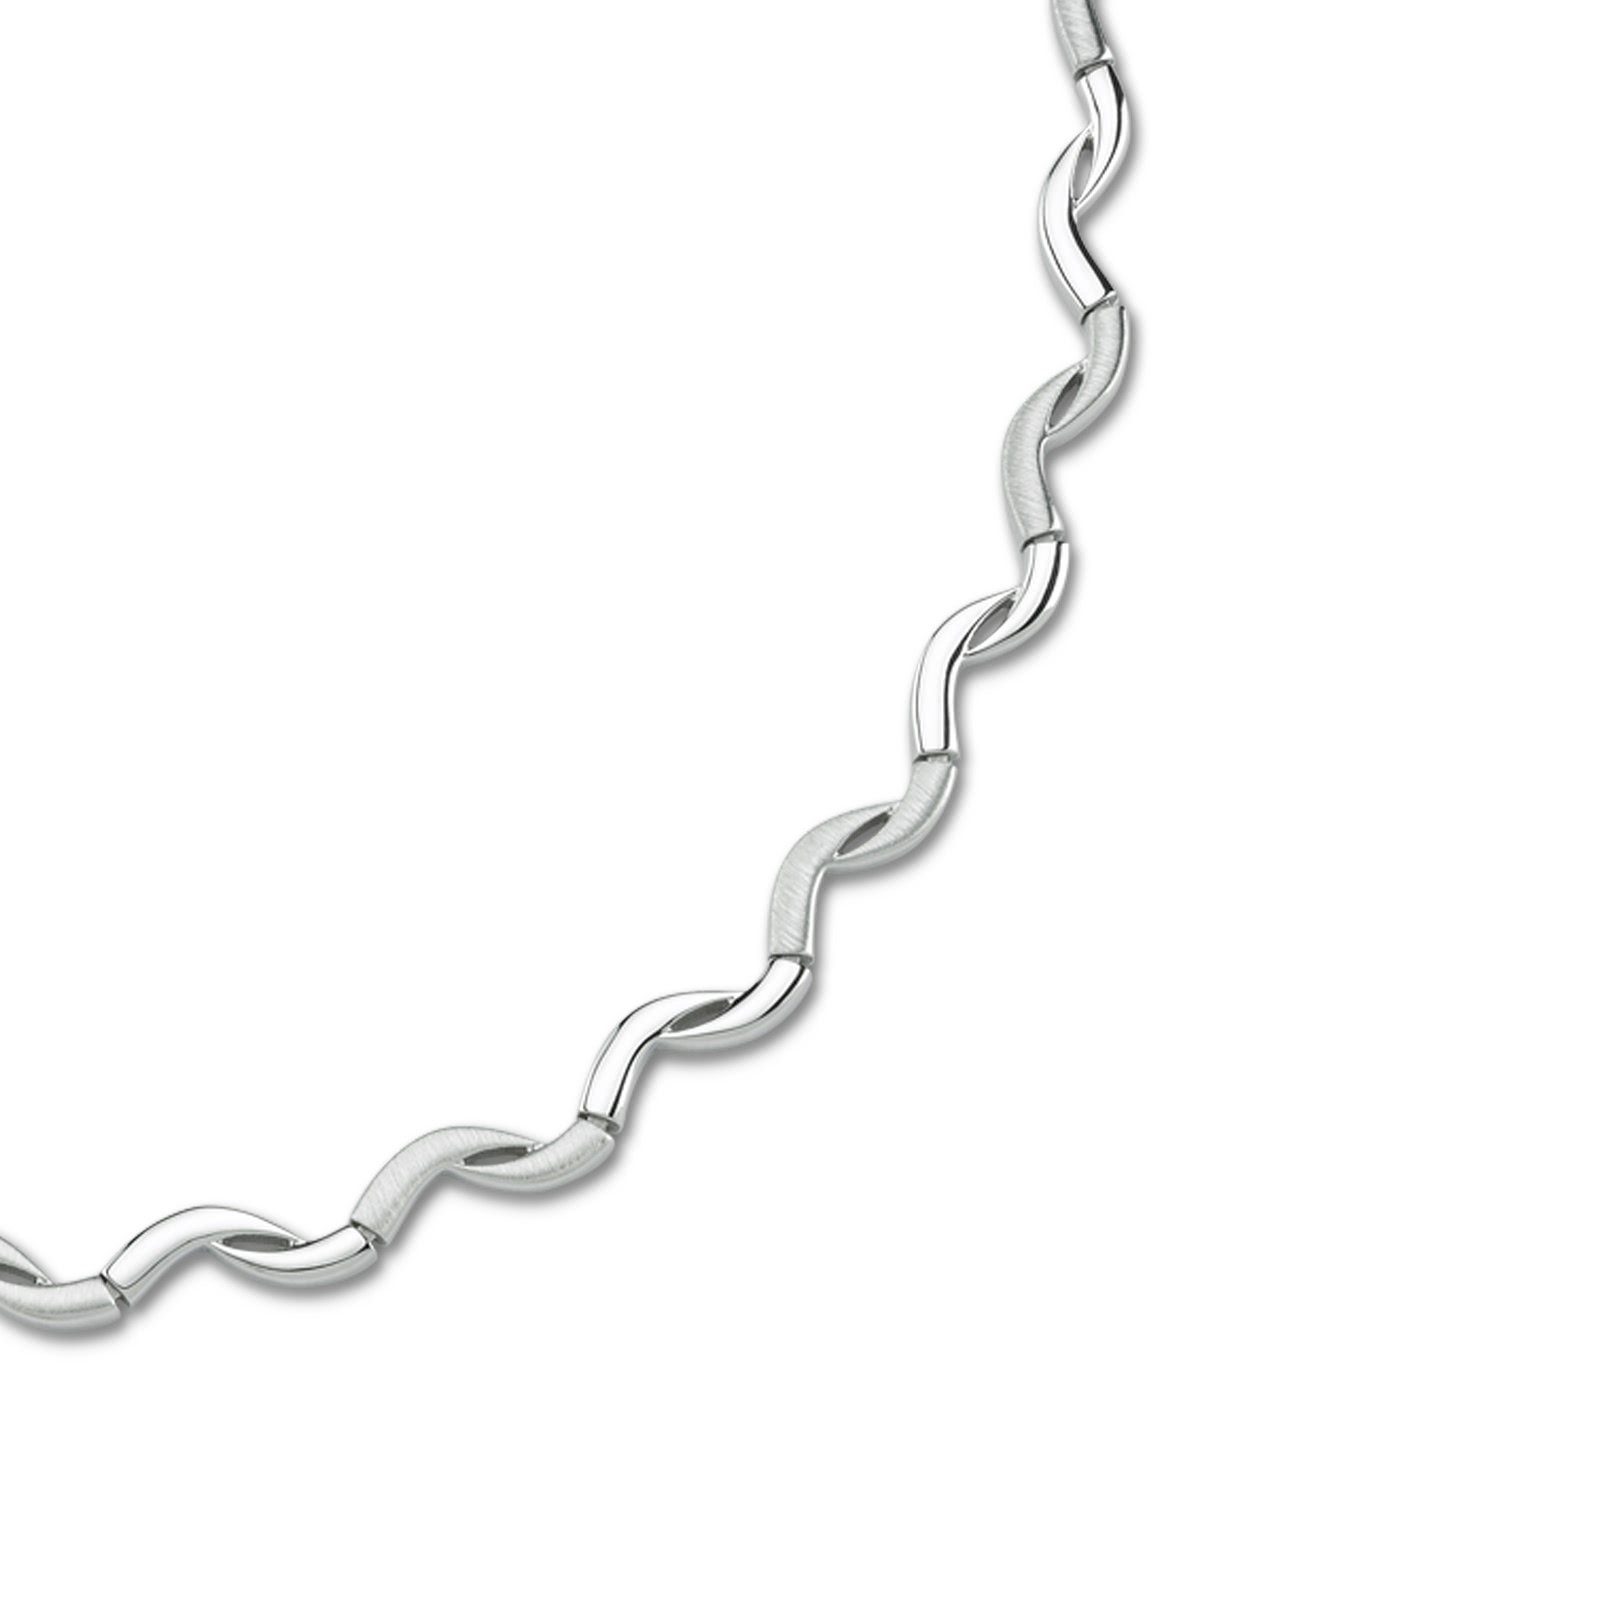 Sterling Silber, Collier silber Damen 925 Farbe: mattiert Collier Halsketten für Balia Colliers, Balia Damen (Collier), Welle